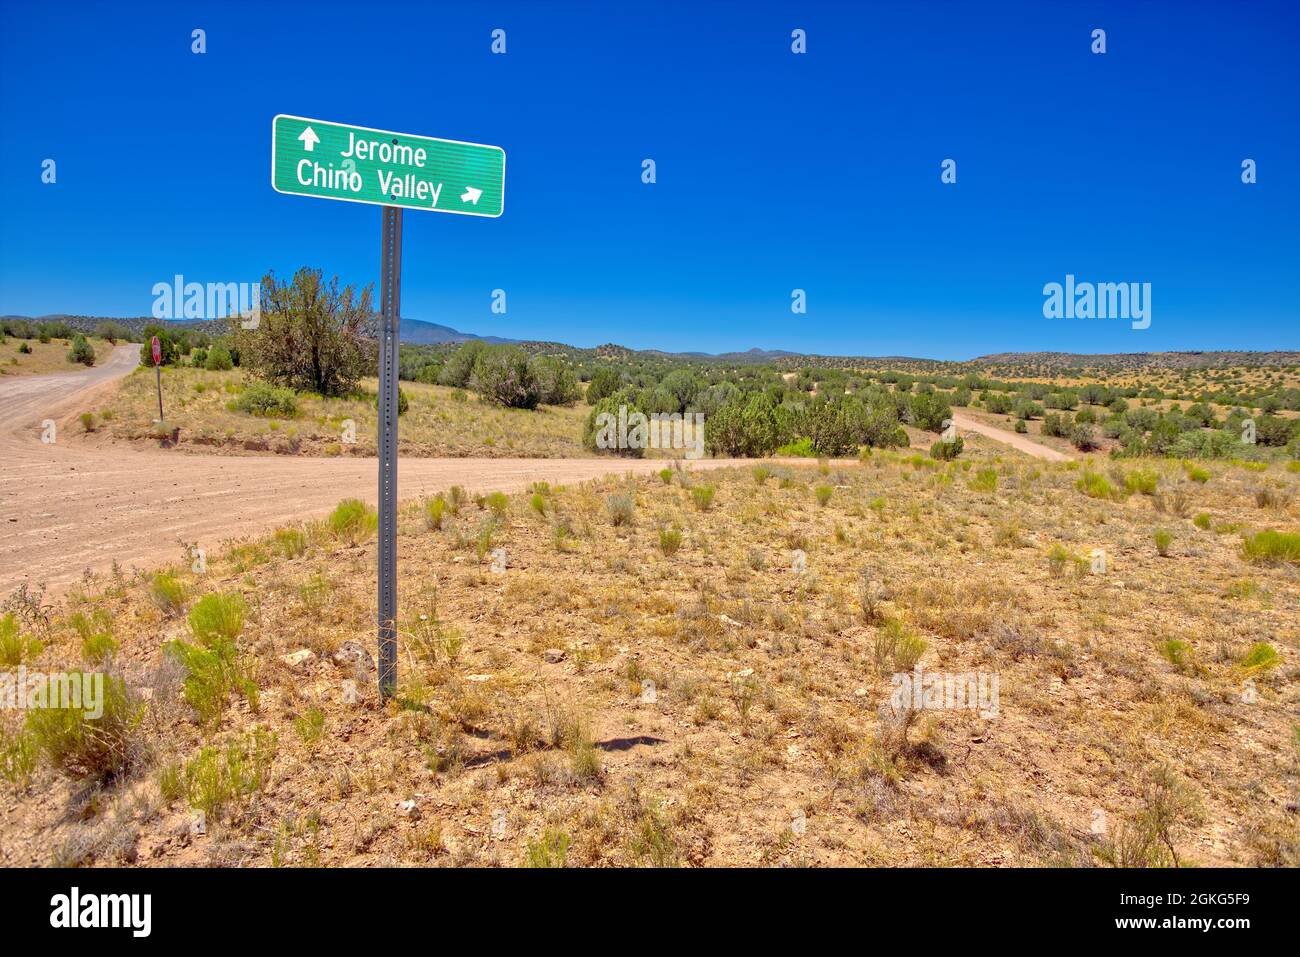 Die Kreuzung von FSR318 und FSR70 in der Nähe von Perkinsville, Arizona. Die FSR70 führt ins Chino Valley, während die FSR318 nach Jerome führt. Gelegen im Prescott Nati Stockfoto